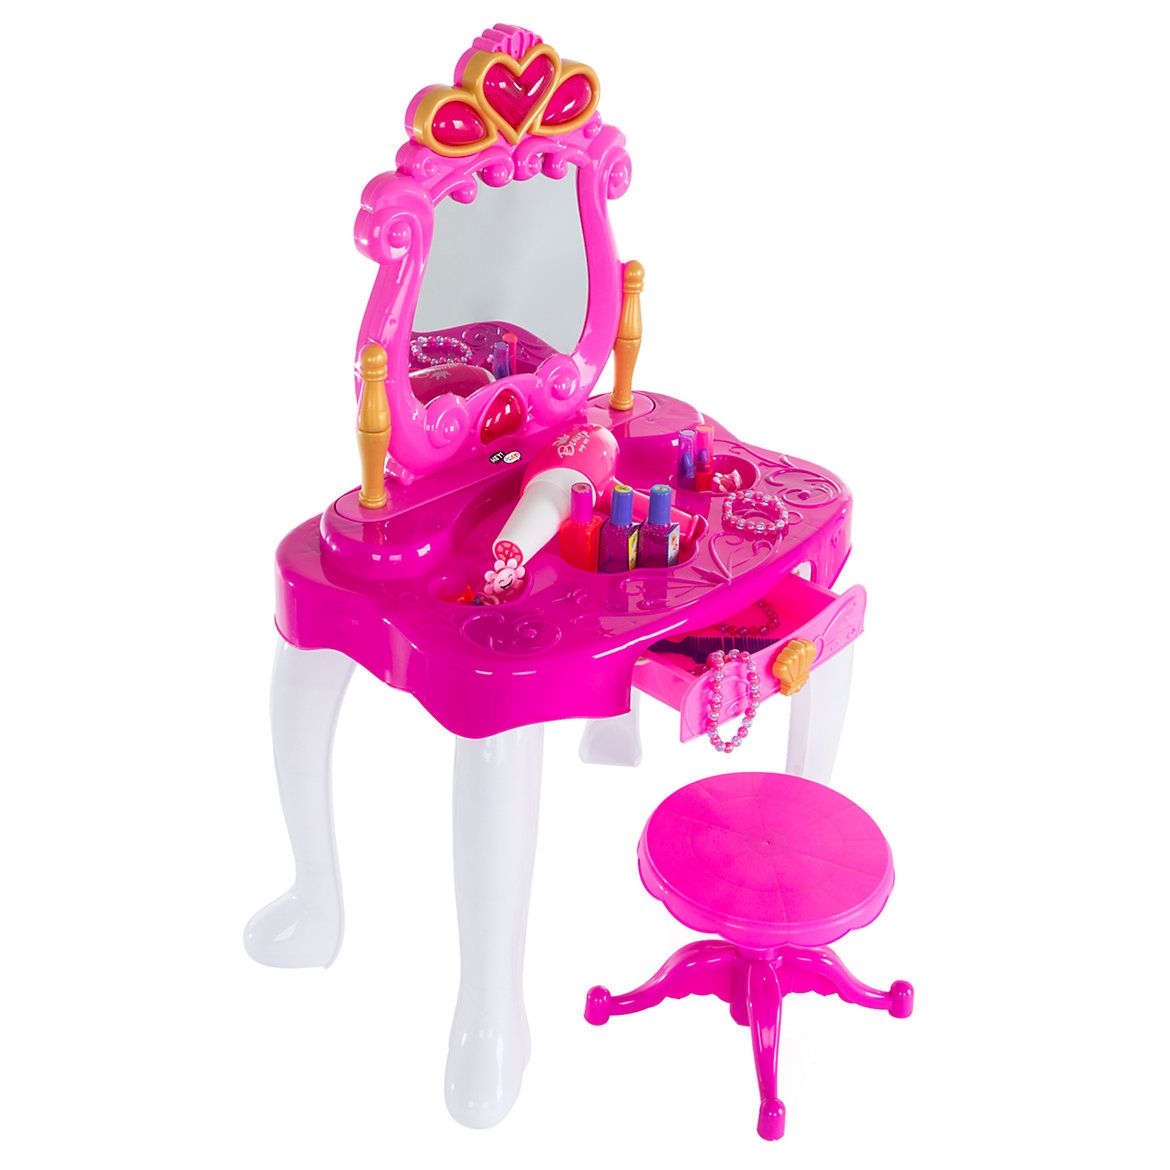 Pretend Play Princess Vanity Set by Hey! Play! | Kohl's